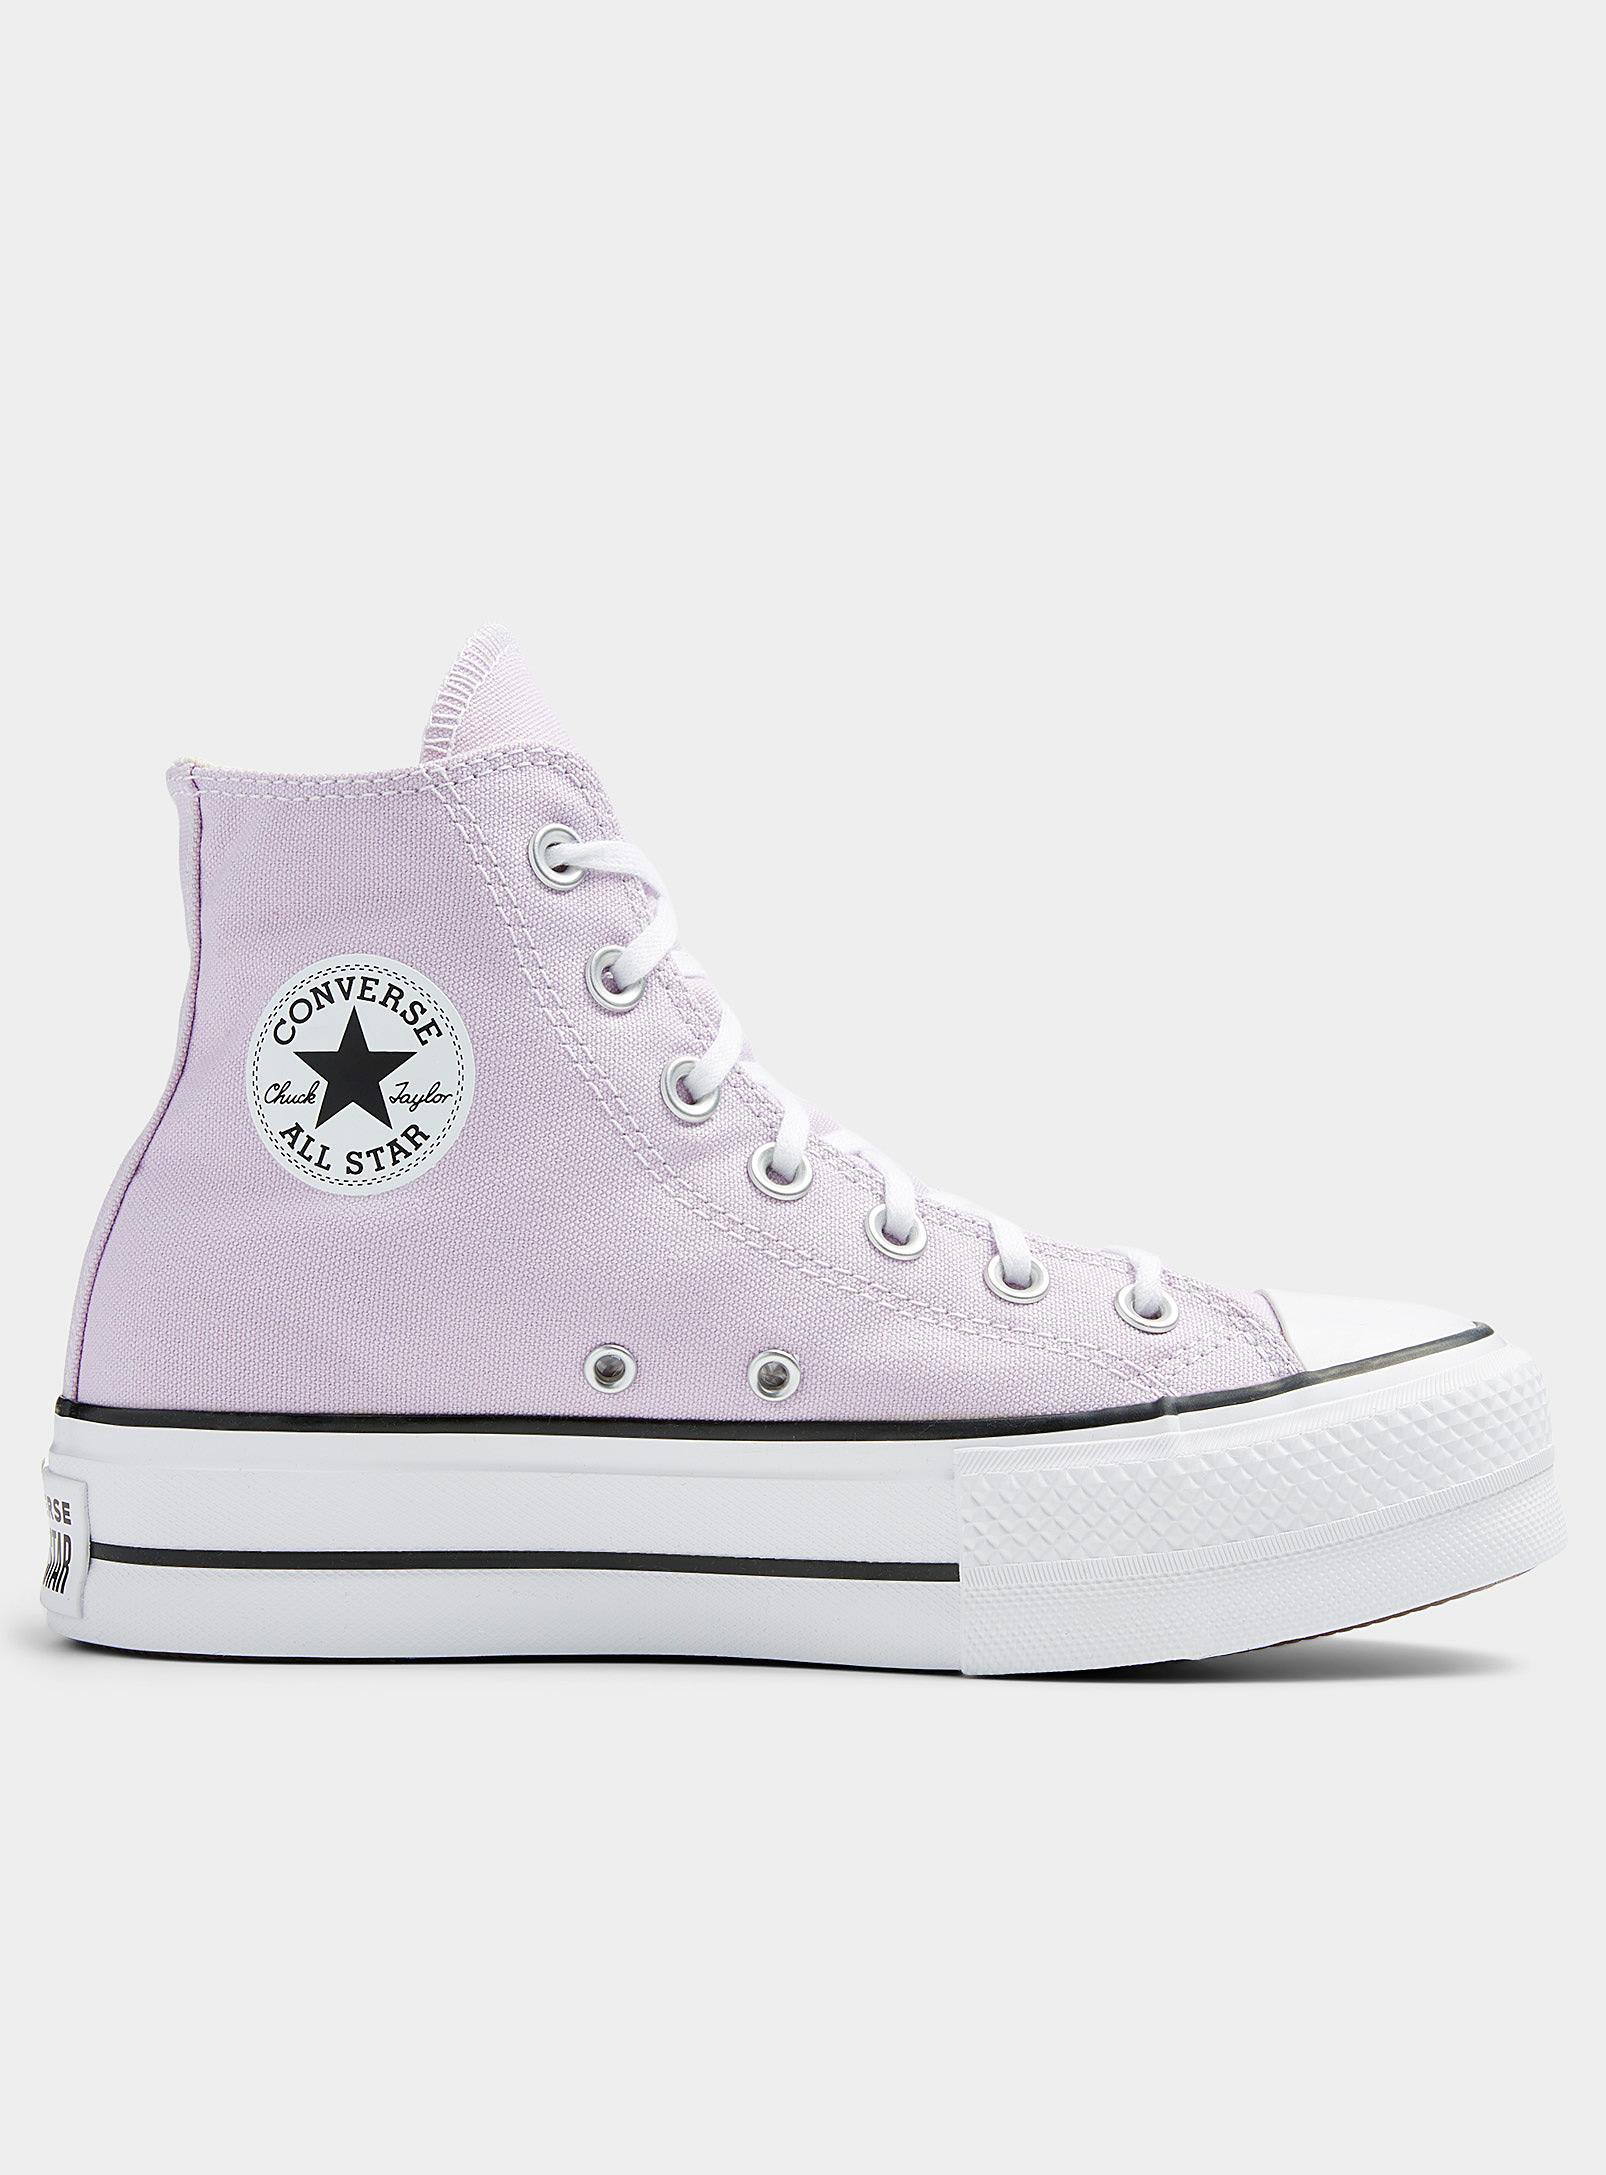 Converse All Star Amethyst Platform Sneakers Women in Purple | Lyst